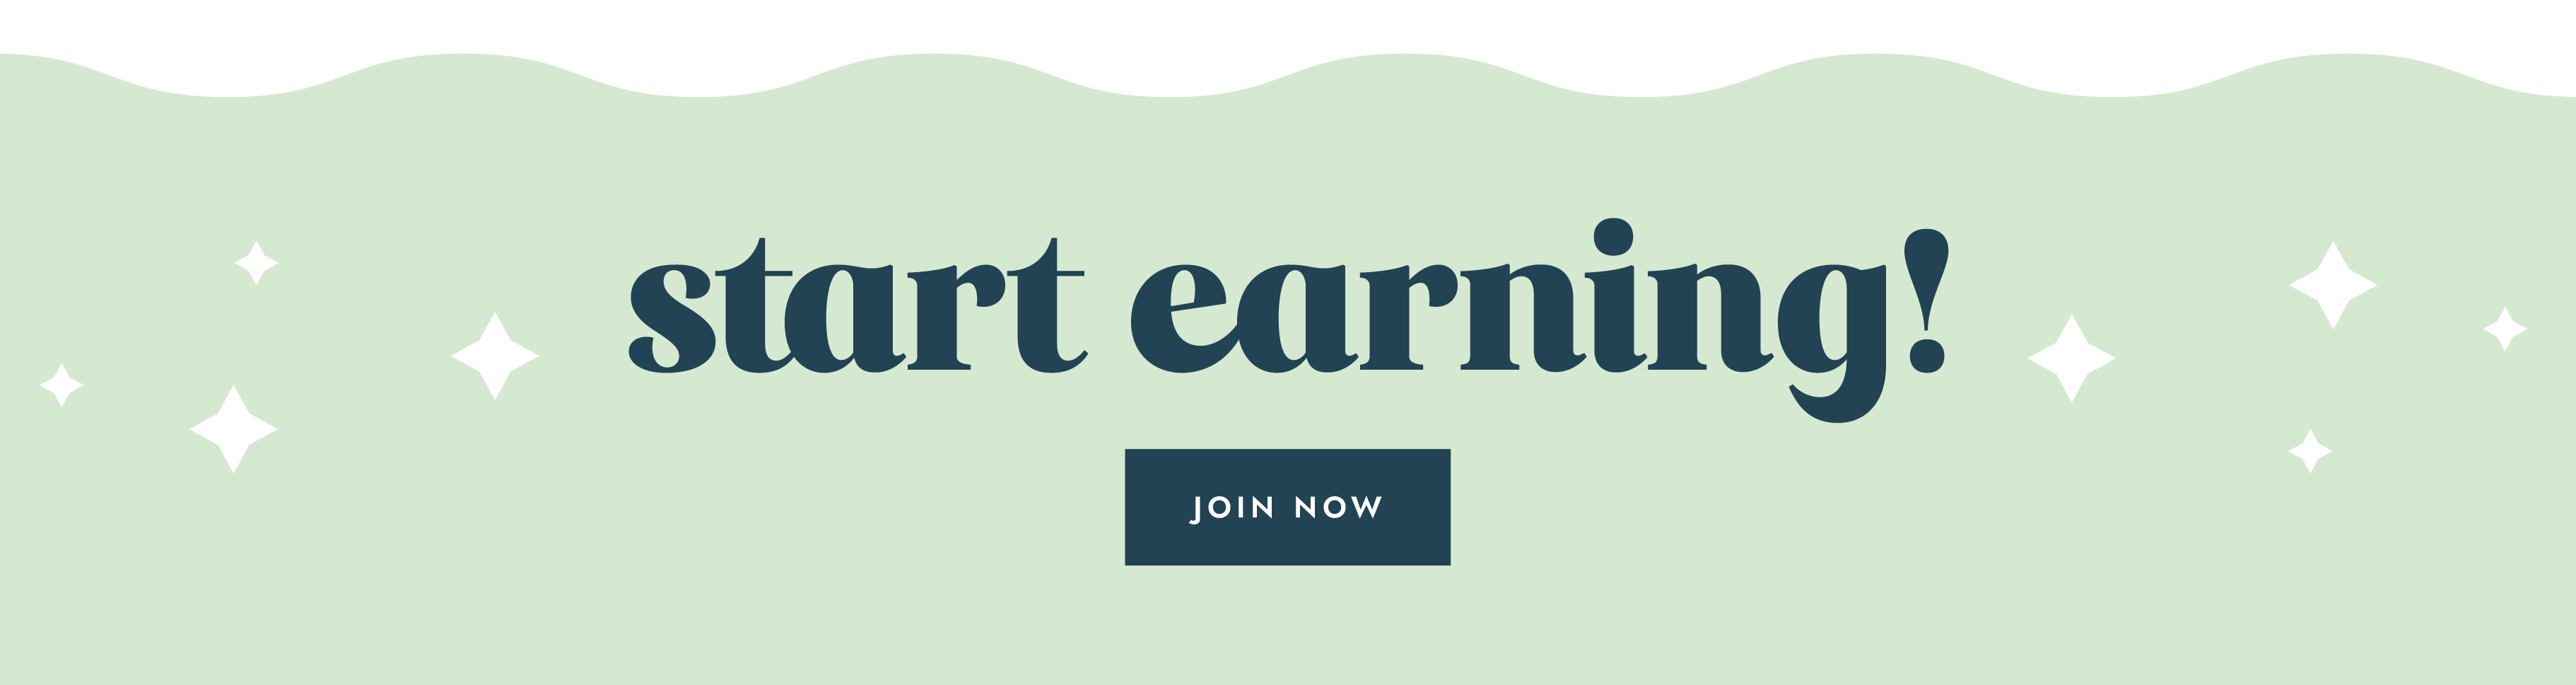 Start earning! Join Now